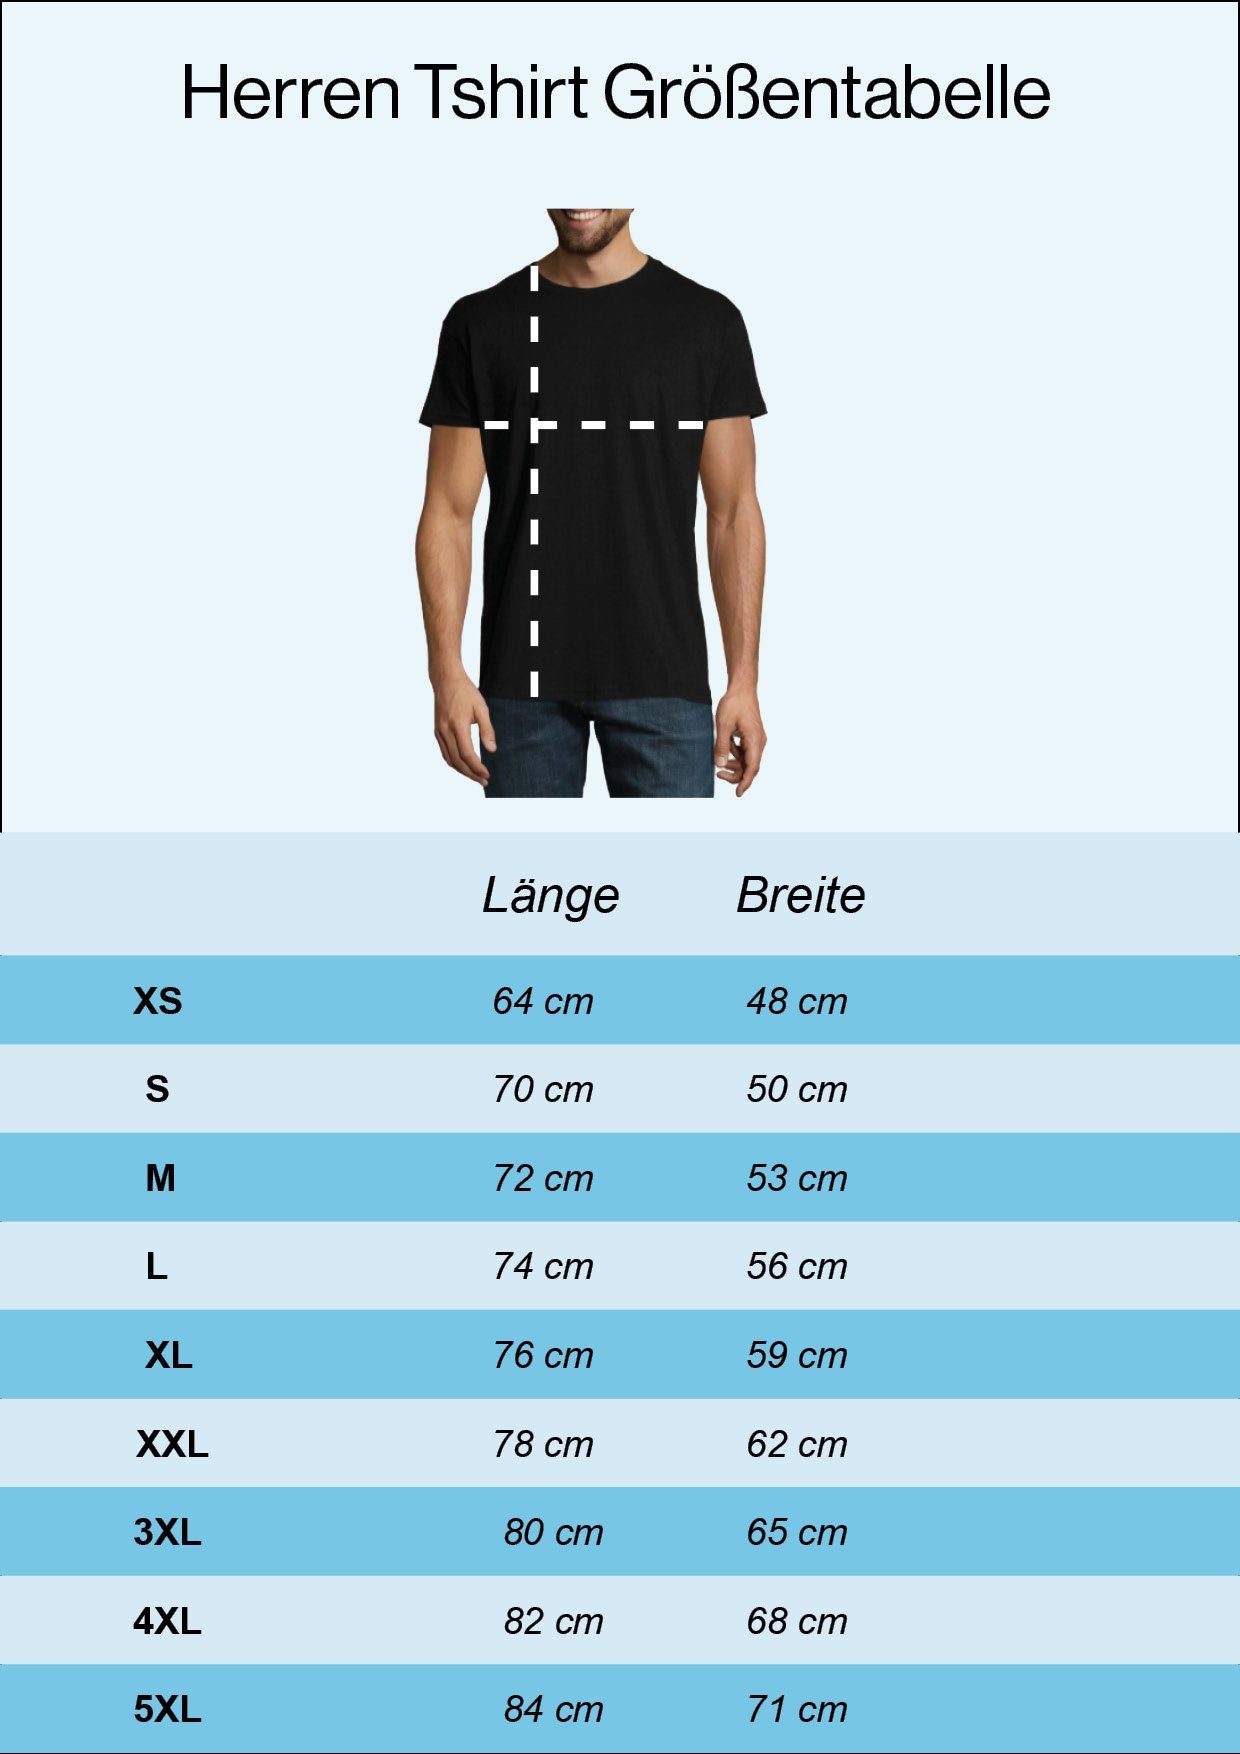 Der T-Shirt Youth In Navyblau Wäsch" Frontprint lustigem "Mei Designz Shirt Läderhose Herren mit